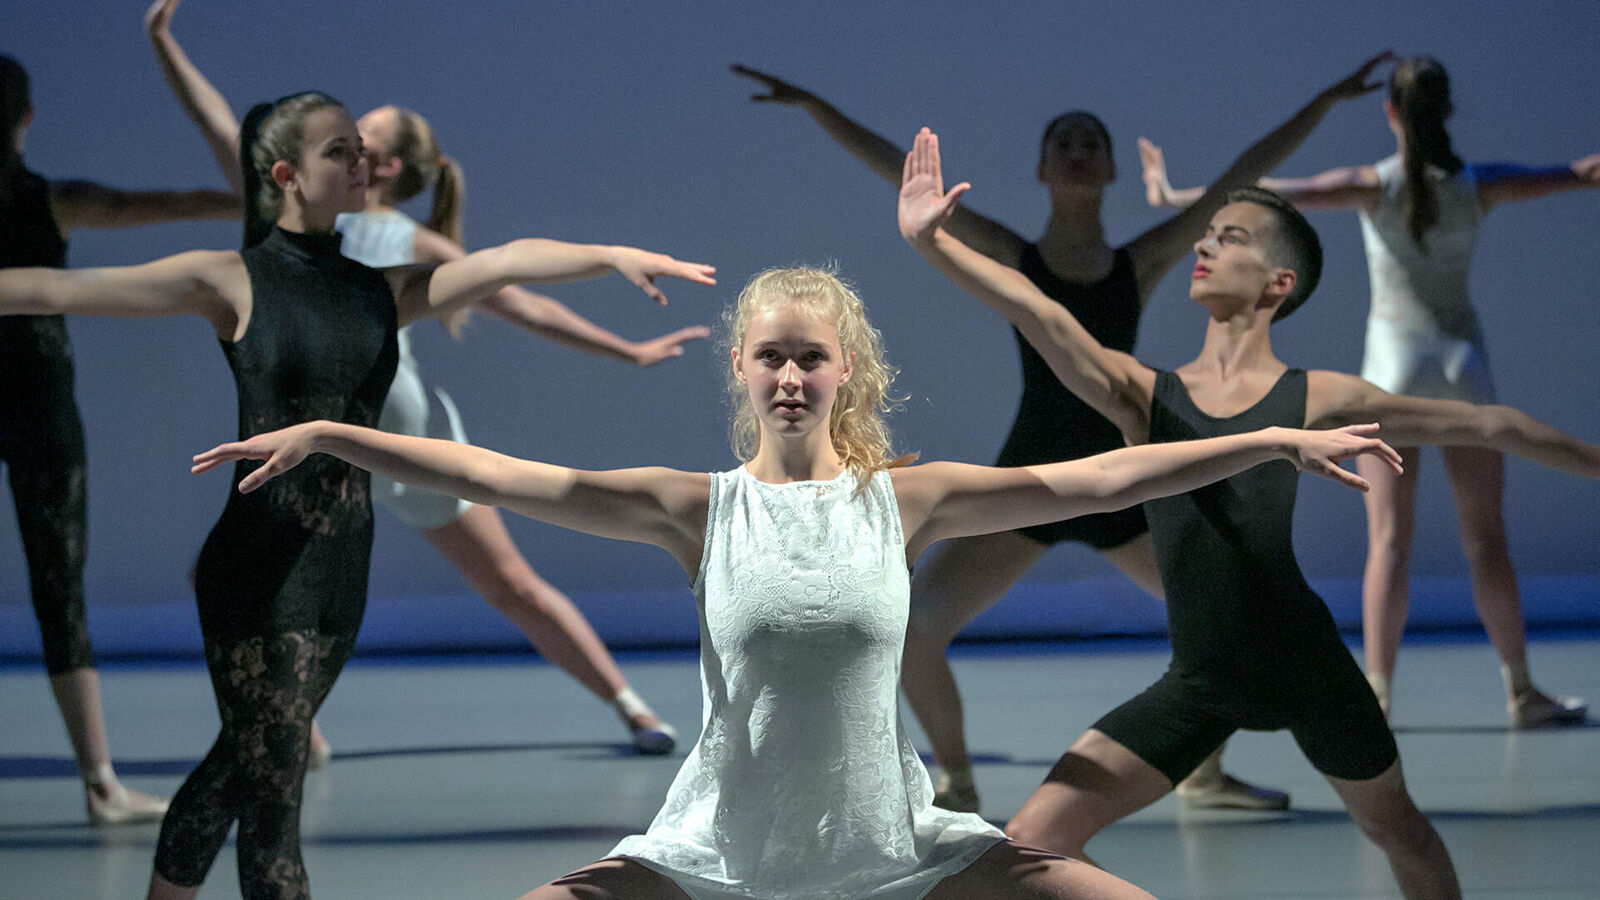 Links livestreams Het Ballet Centrum - za 3 juli 